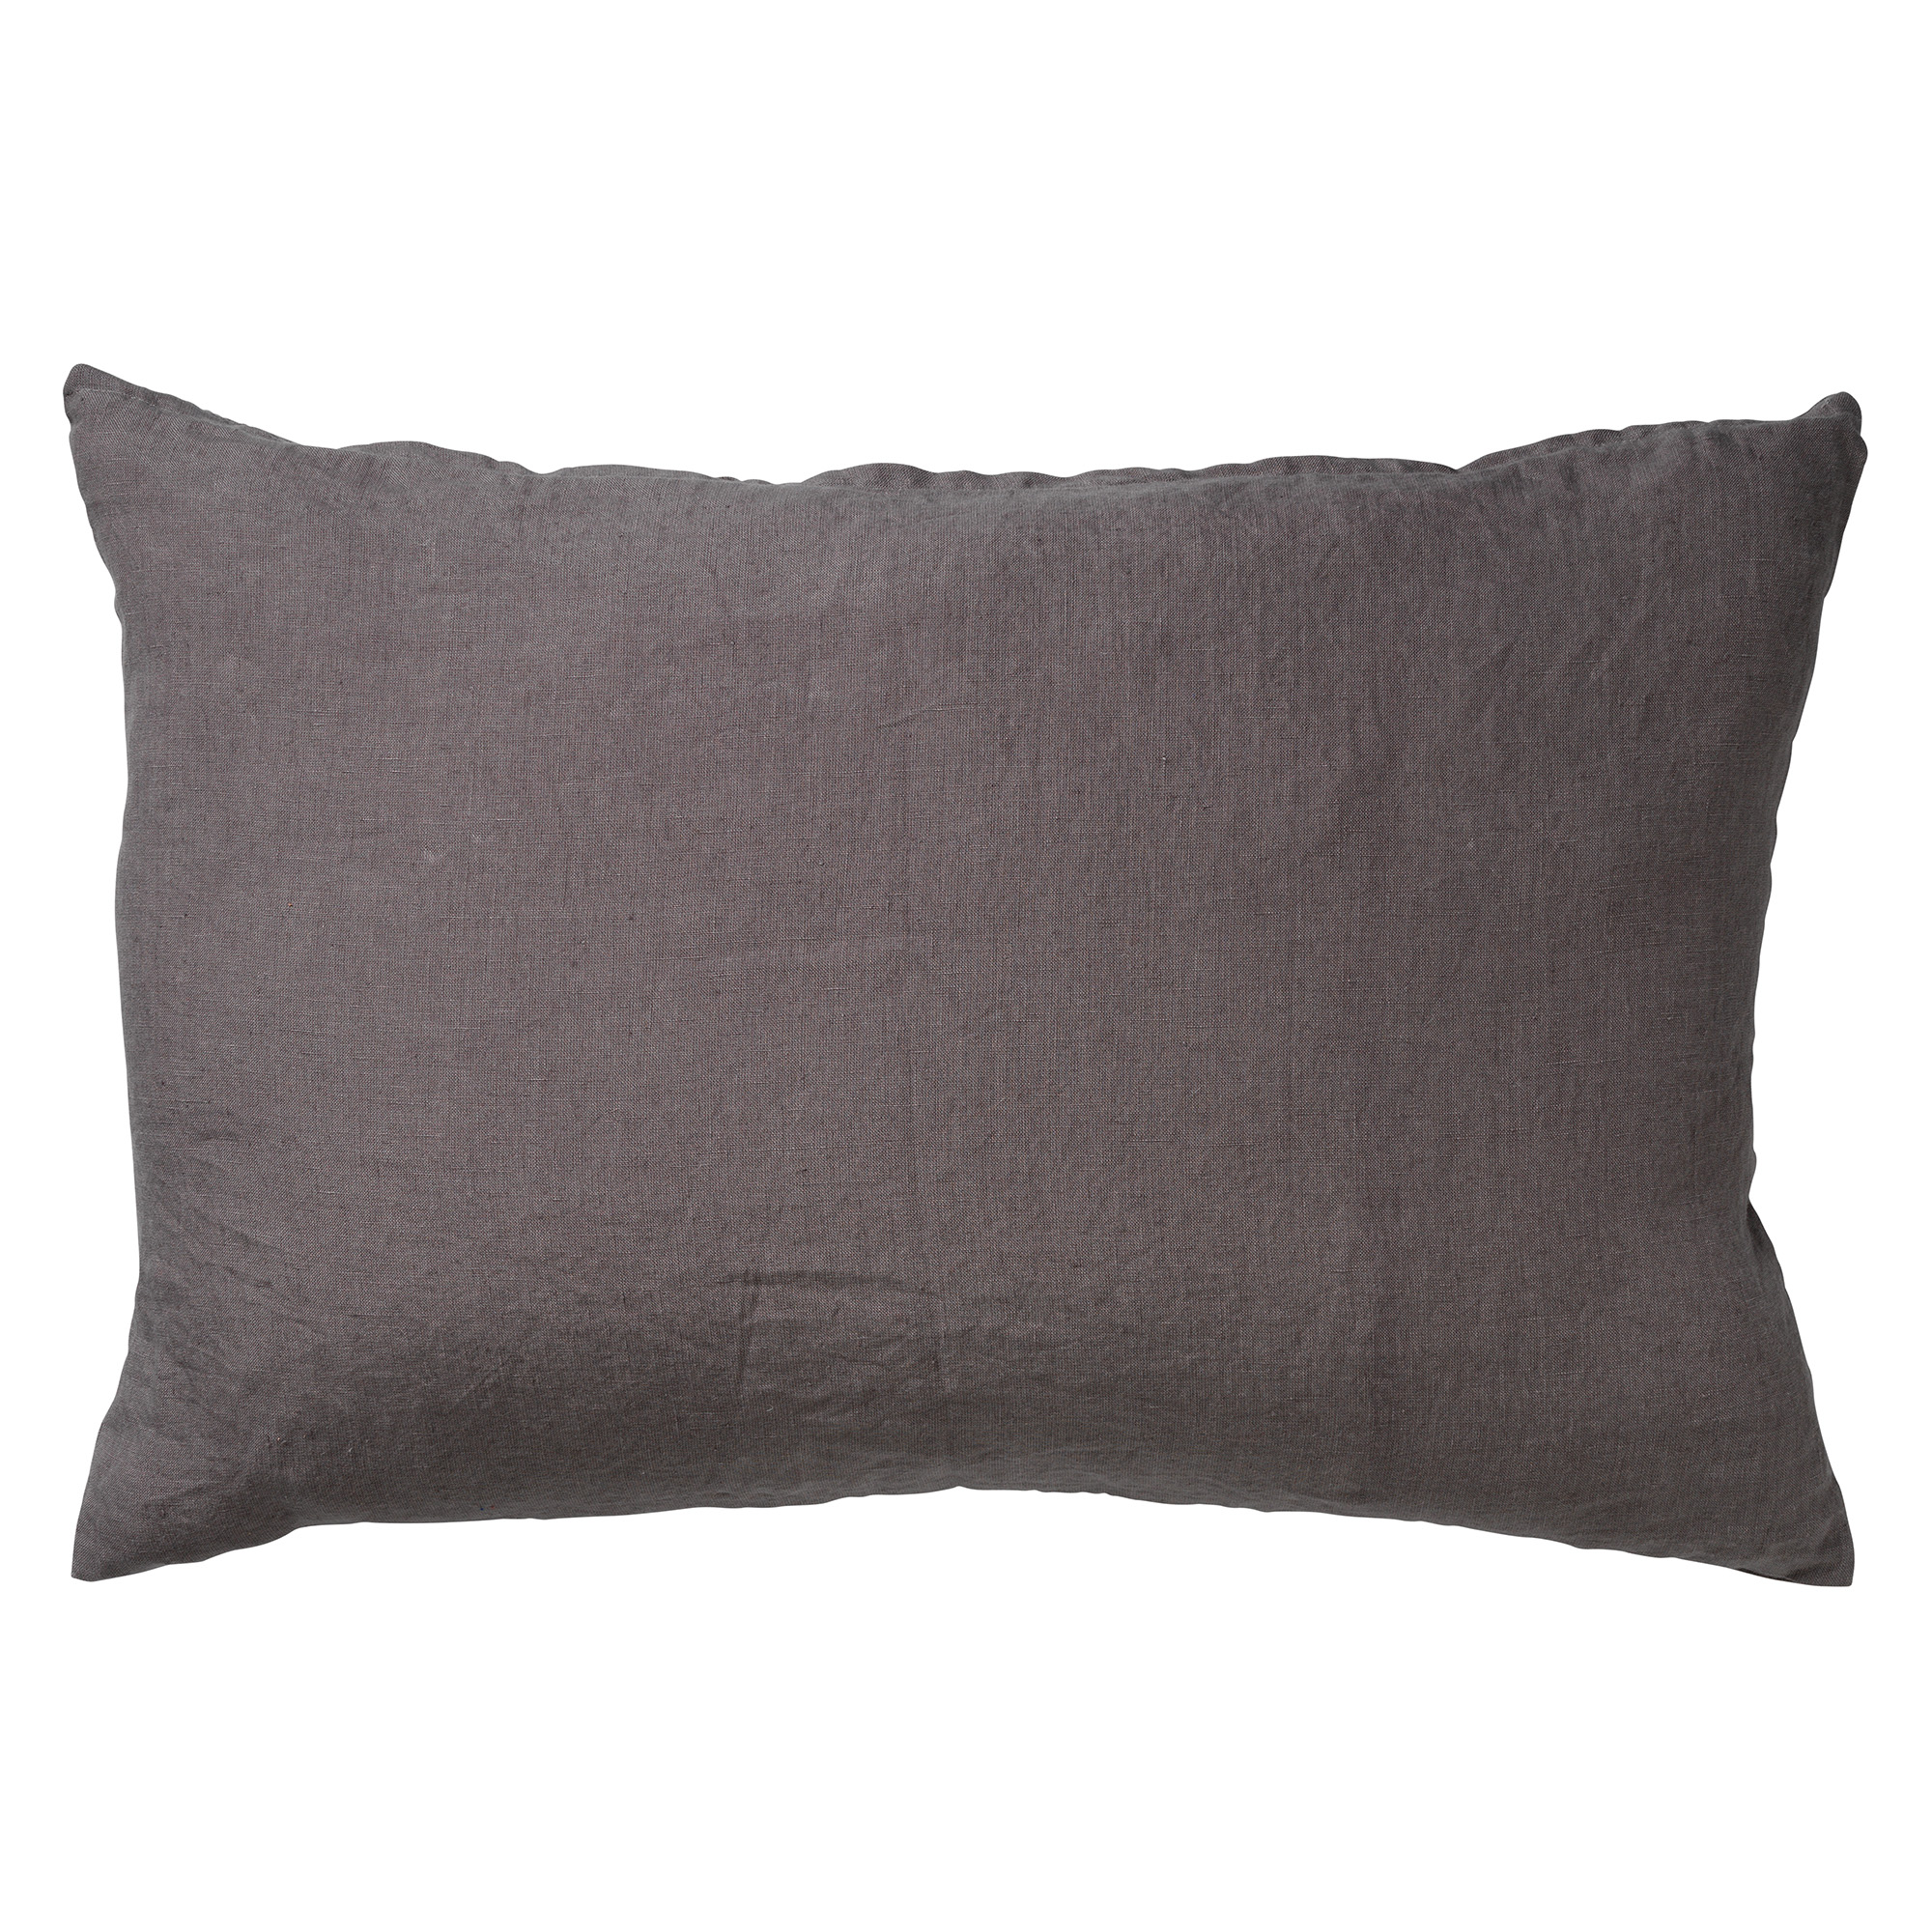 LINN - Kussenhoes LINNEN Charcoal Grey 40x60 cm - grijs